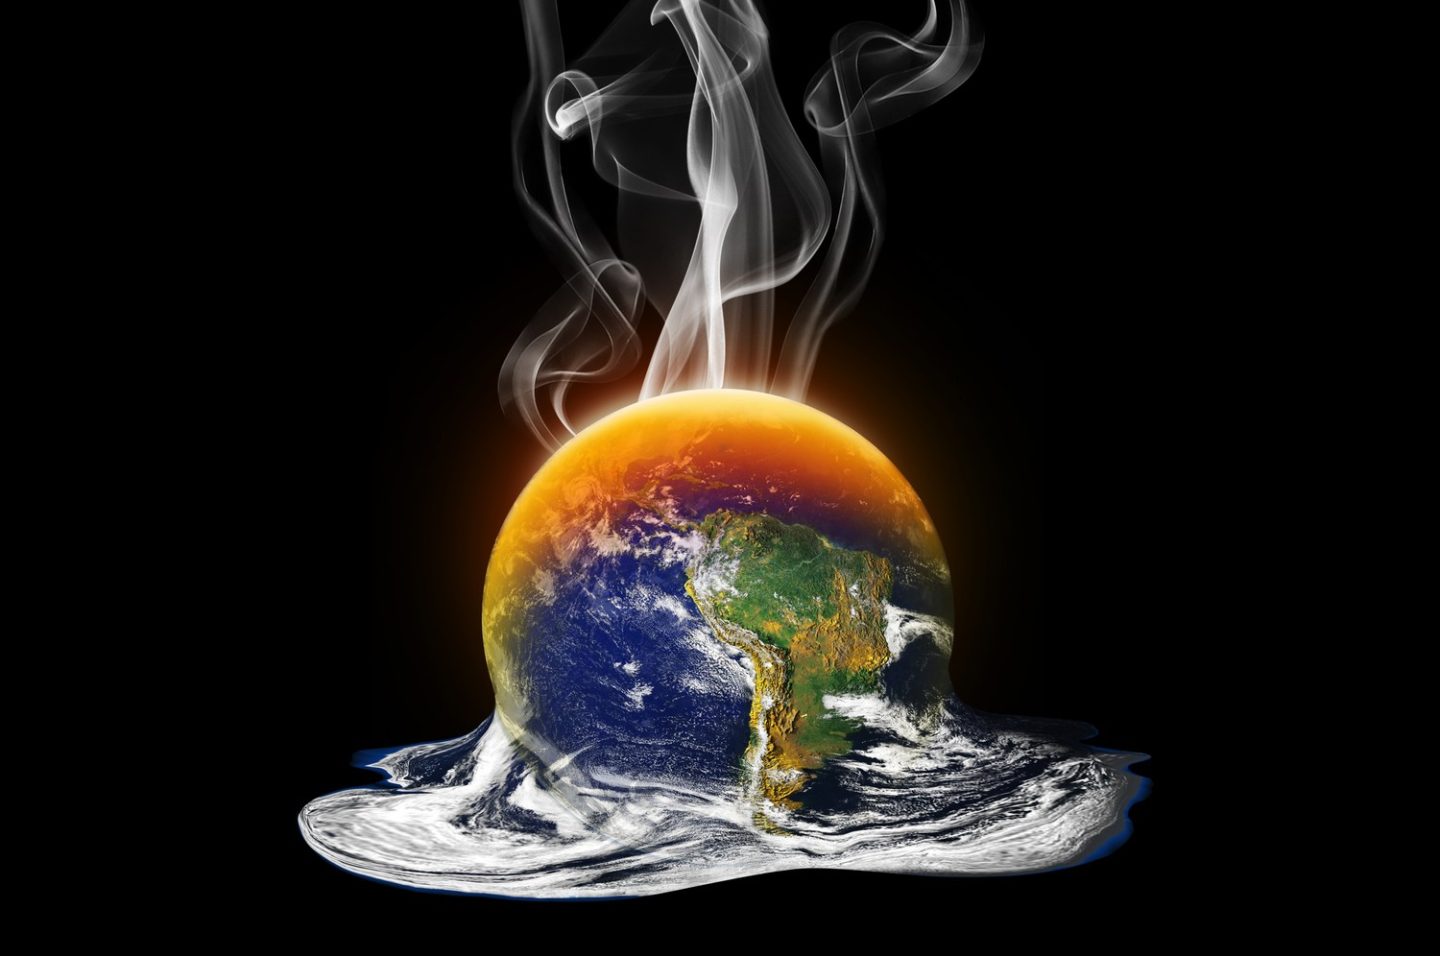 سيصبح كوكبنا خطرًا عام 2100 بسبب ارتفاع الحرارة المستمر